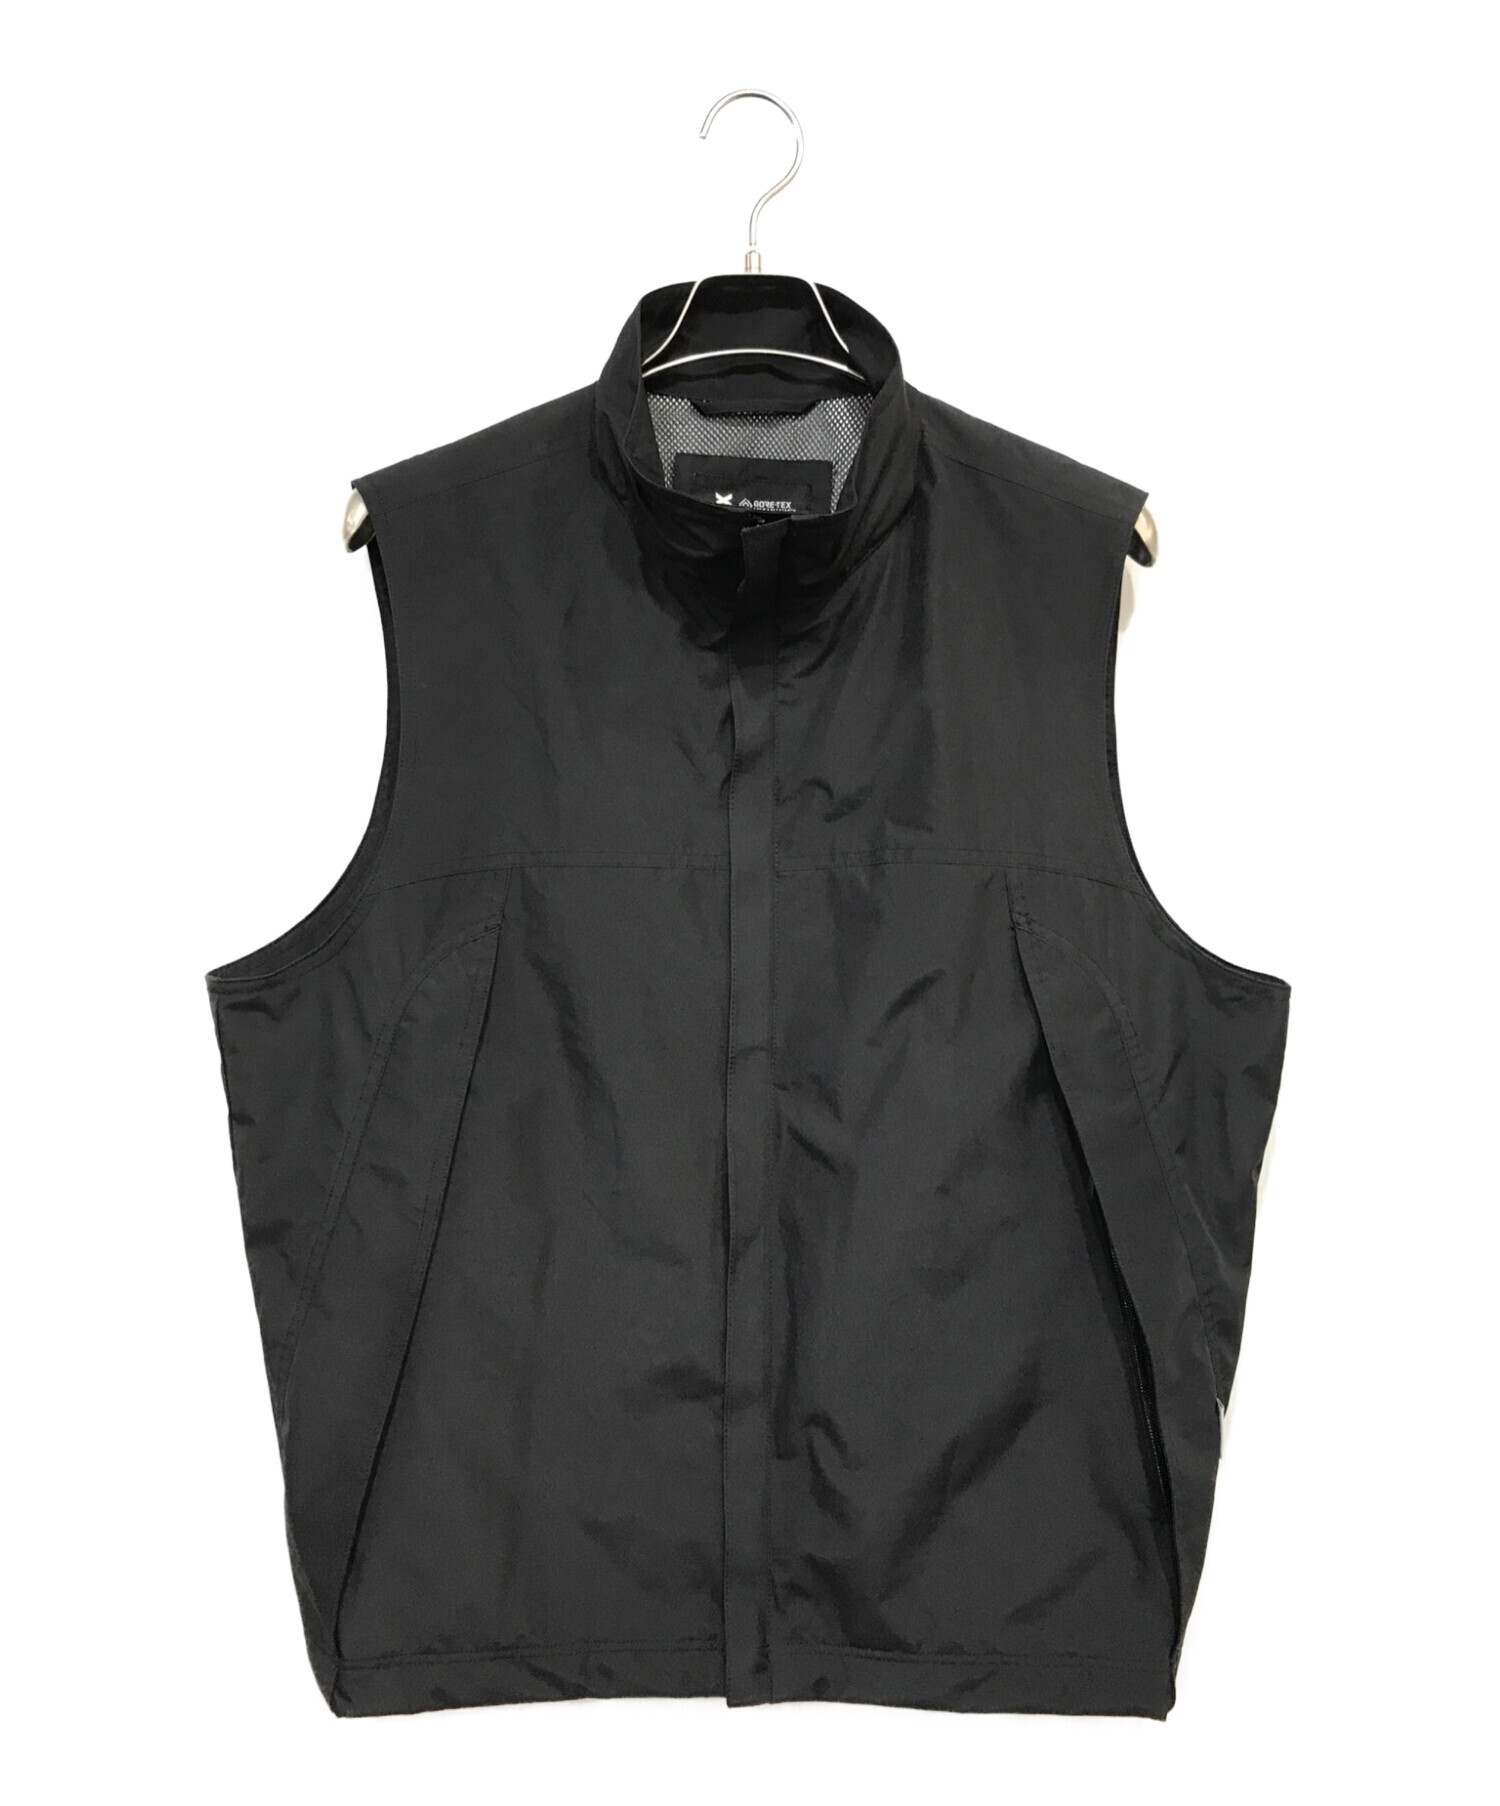 Carbonate GORE-TEX Infinium™ Vest Pack